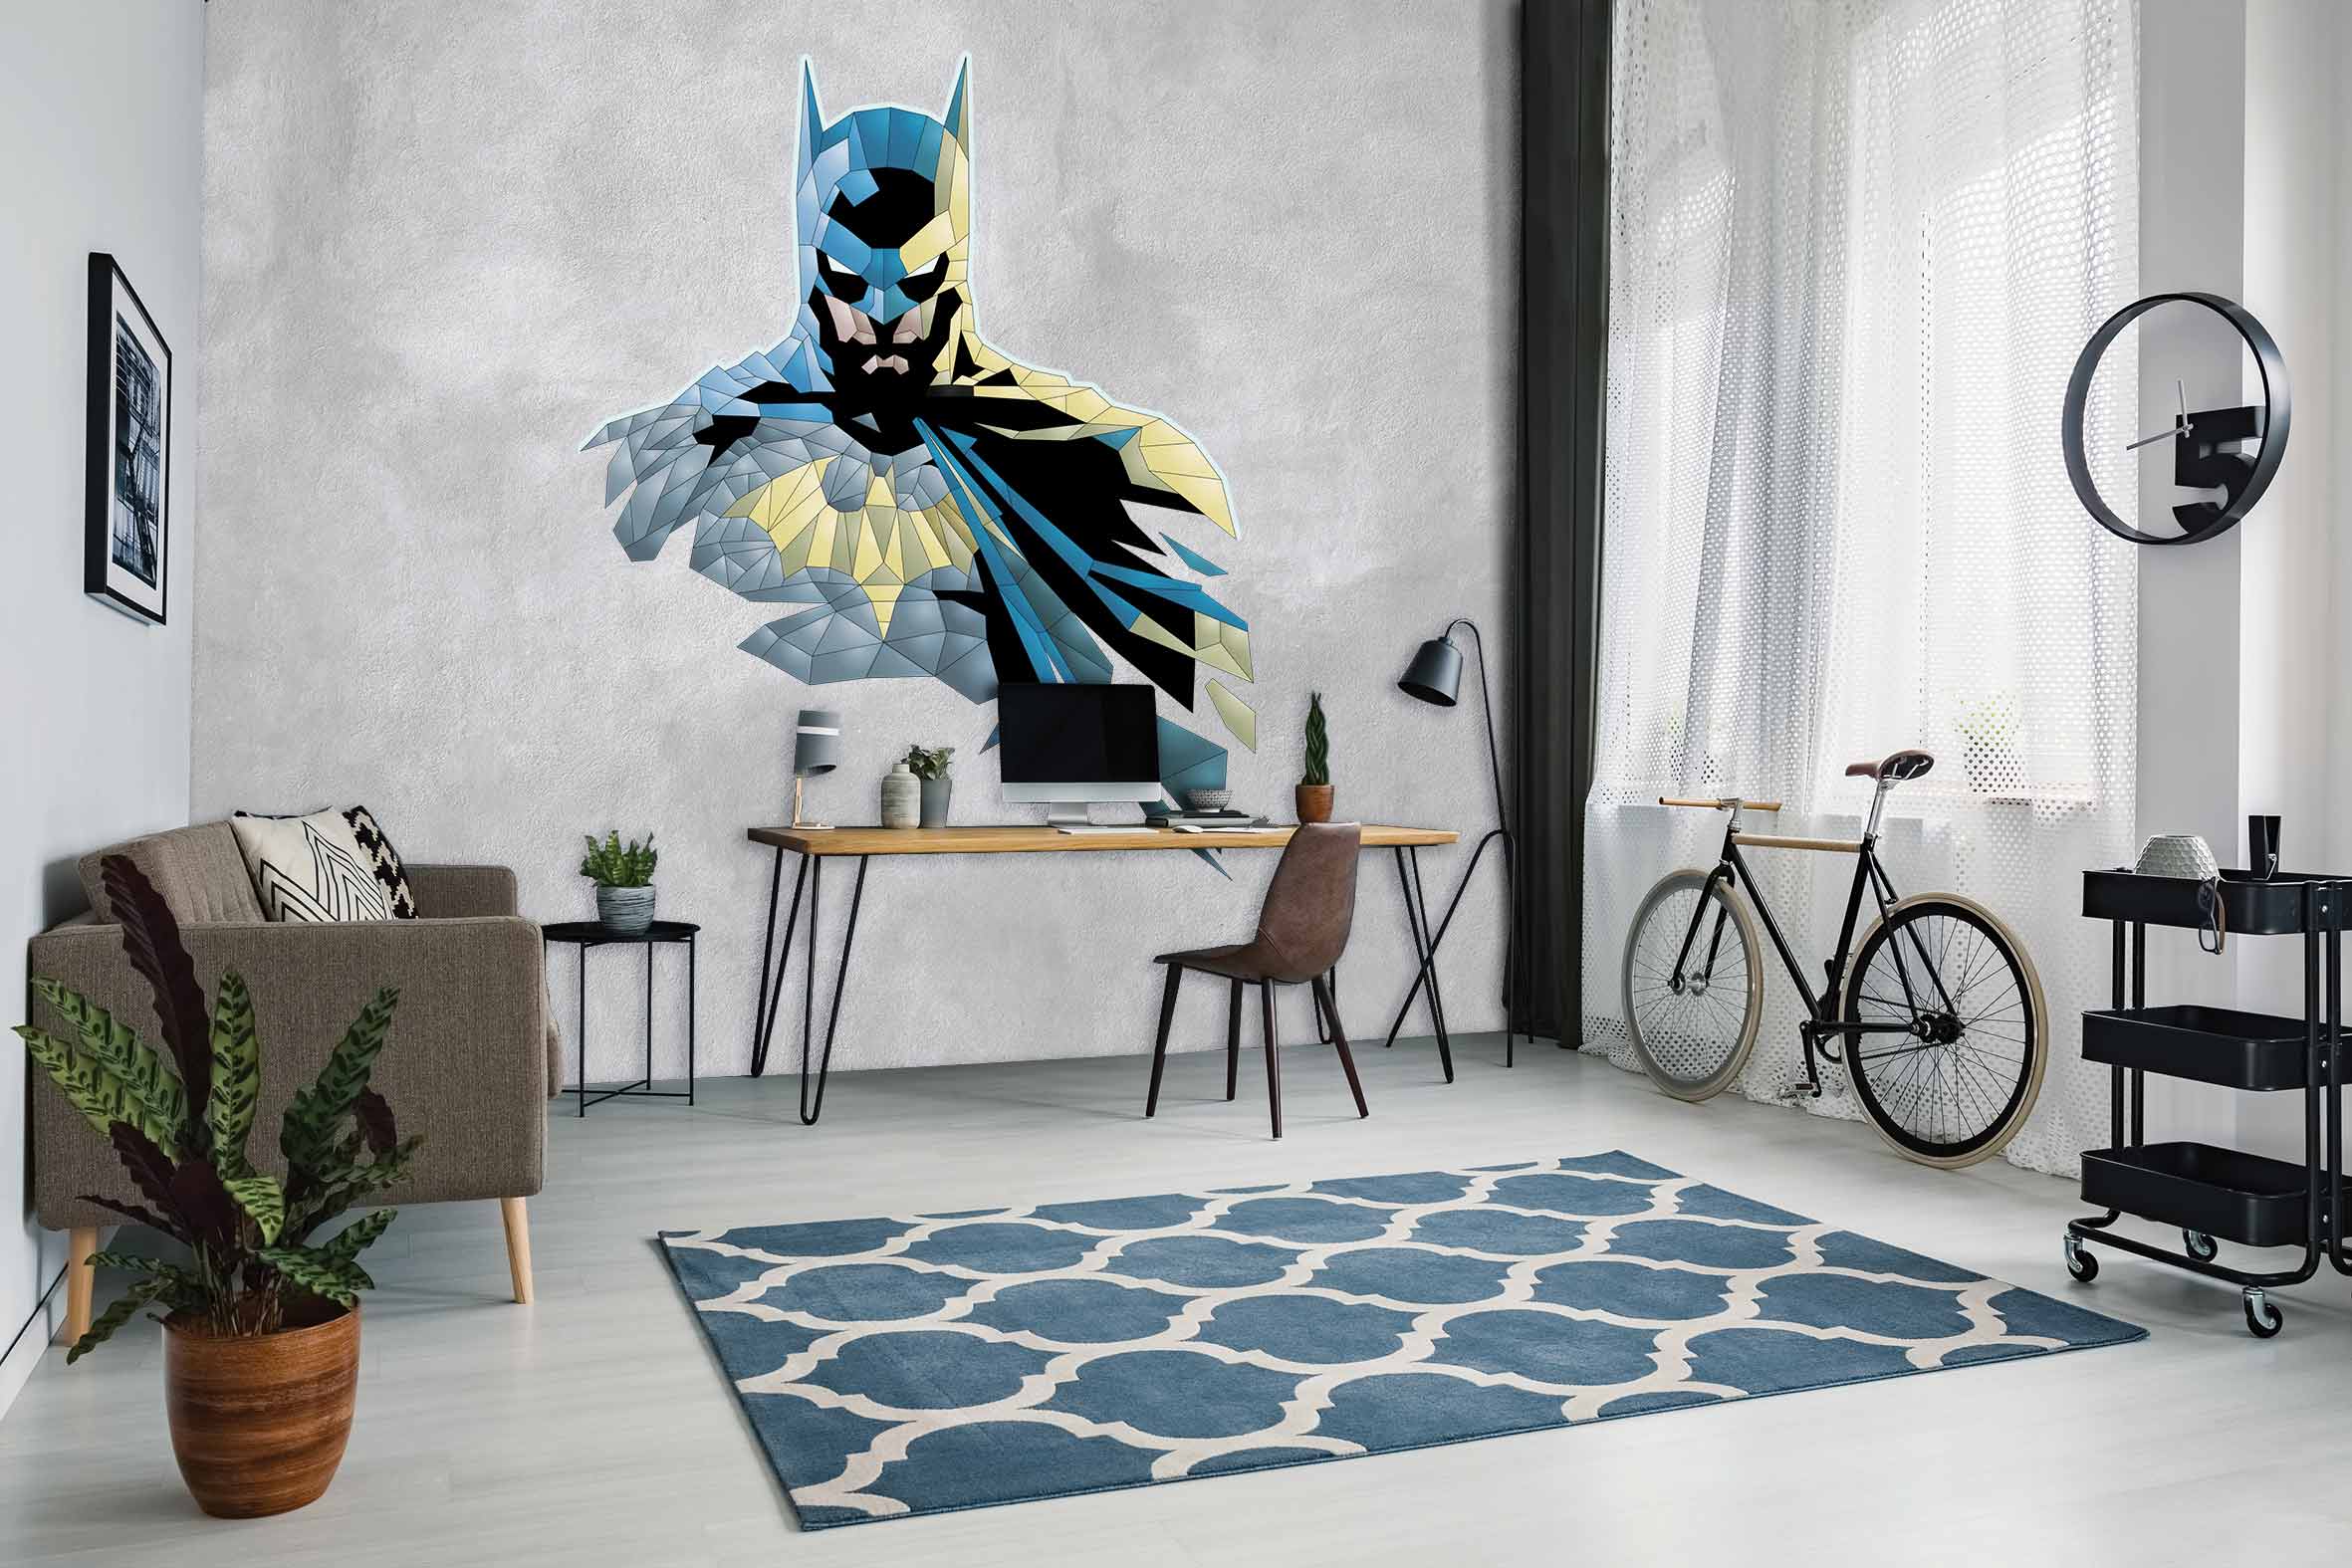 BATMAN ON THE WALLPAPER - Déco Wallpaper